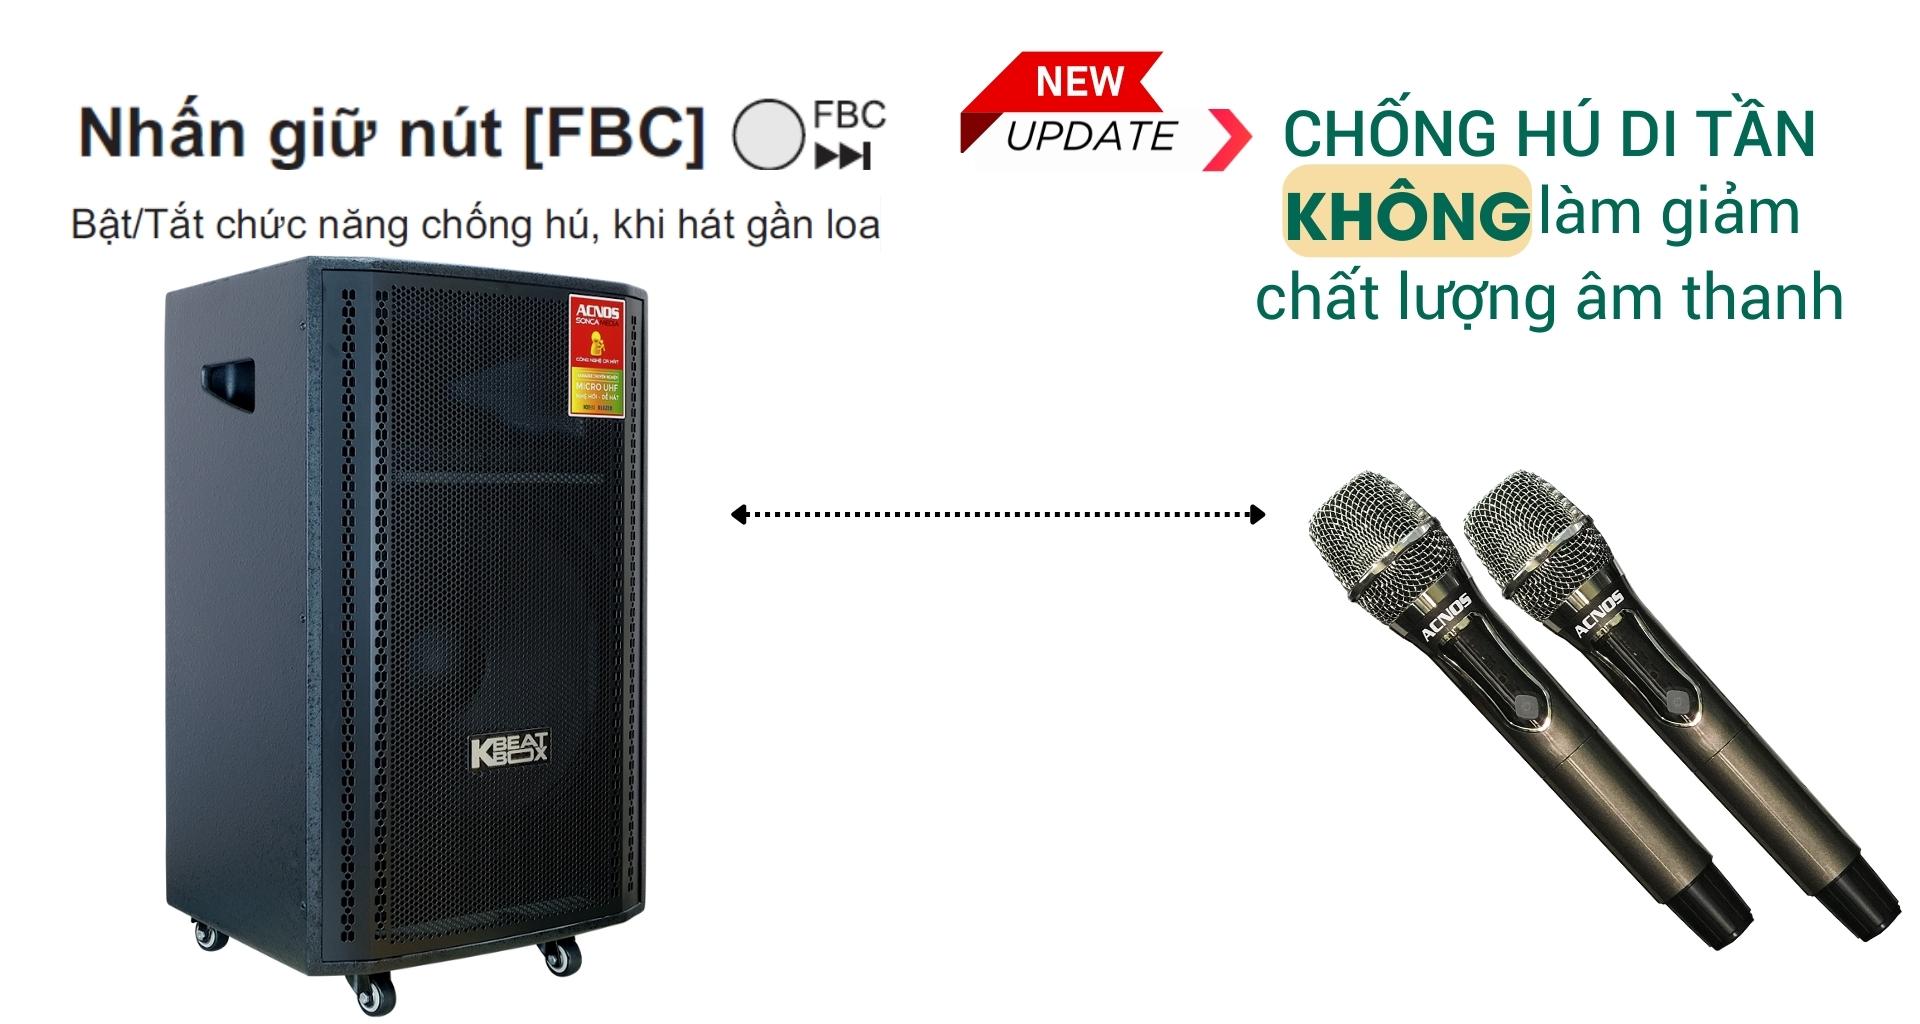 cb99gr acnos loa karaoke bluetooth tinh nang chong hu di tan 2323b0decfda4c4087068bdbc51dd9fd